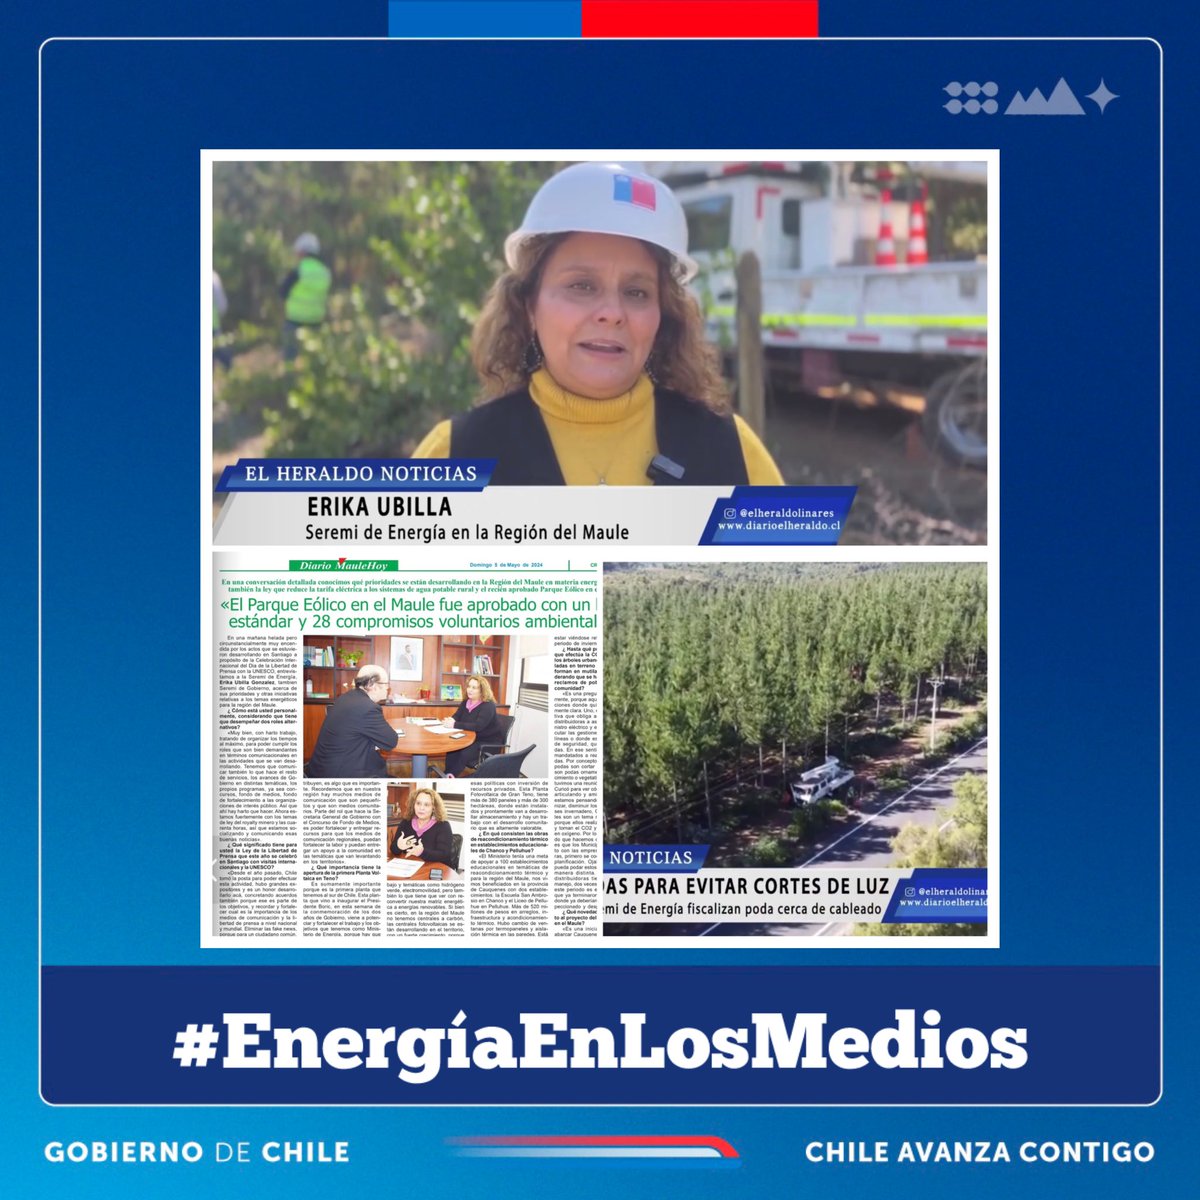 #EnergíaEnLosMedios, #MauleHoy #HeraldoNoticias  destacan en sus ediciones la entrevista a la Seremi de Energía @epubilla en temas de prioridades para la región del #Maule en el área energético 

Link: online.fliphtml5.com/tgvnp/fhpb/#p=1

@MinEnergia 
@VoceriaMaule